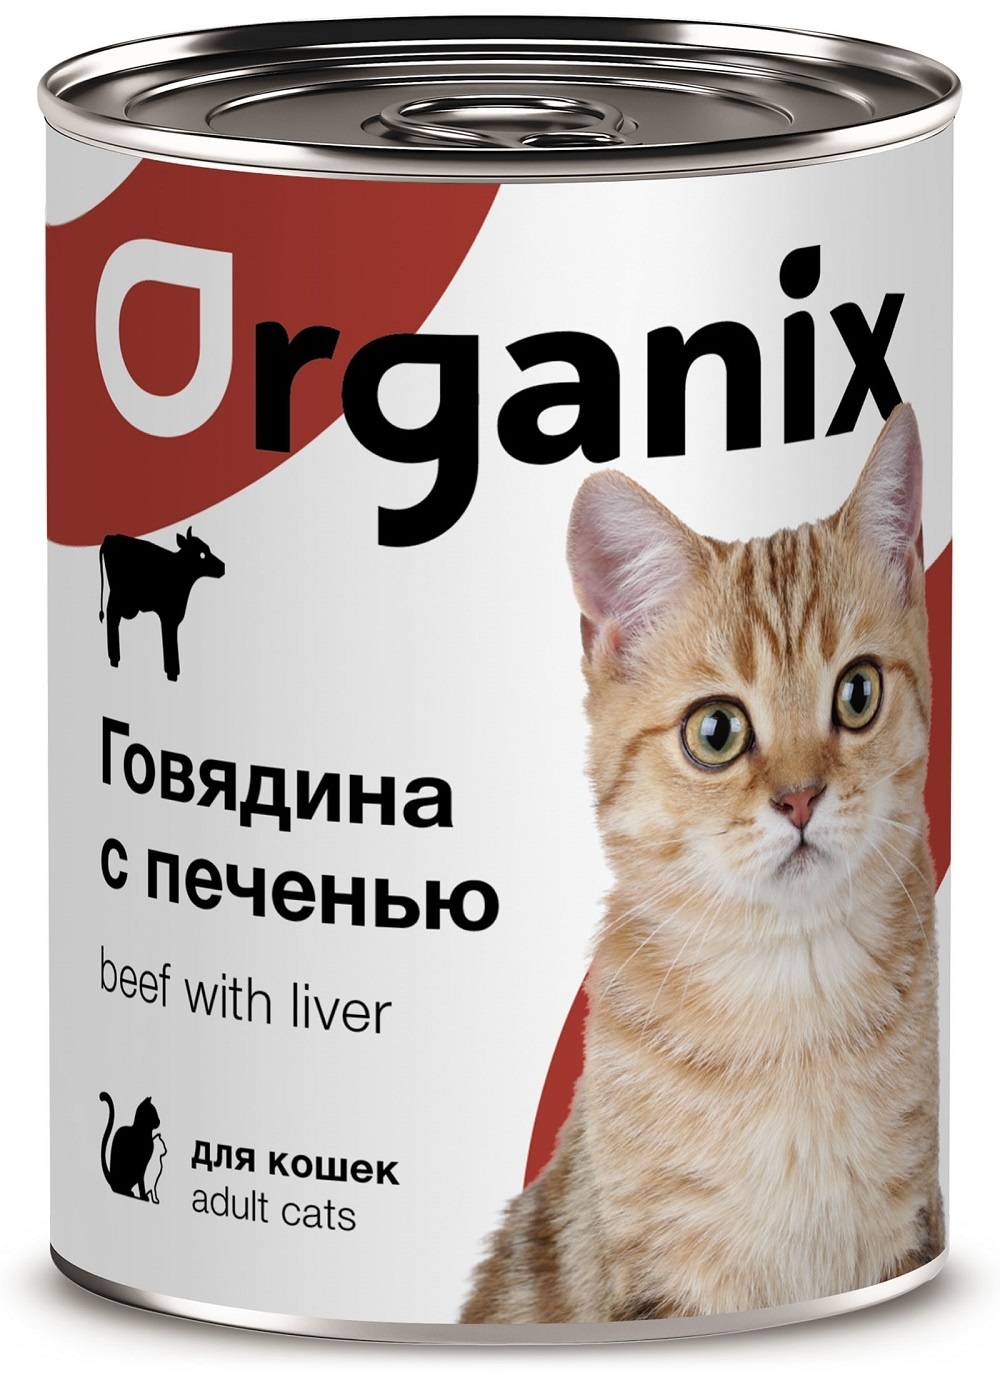 Organix консервы с говядиной и печенью для кошек (410 г)